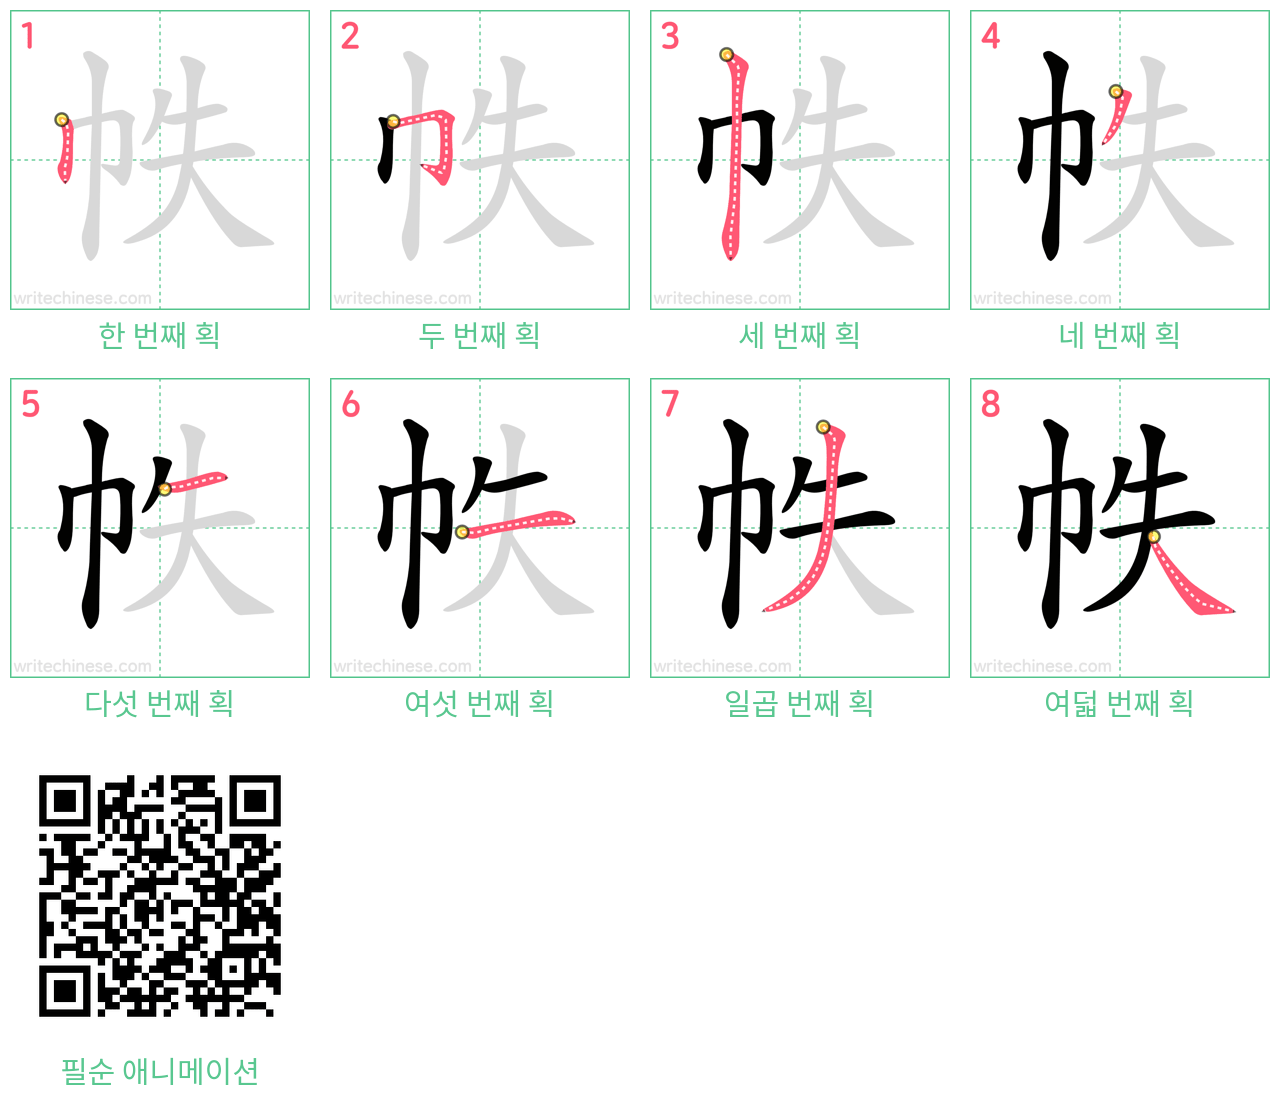 帙 step-by-step stroke order diagrams